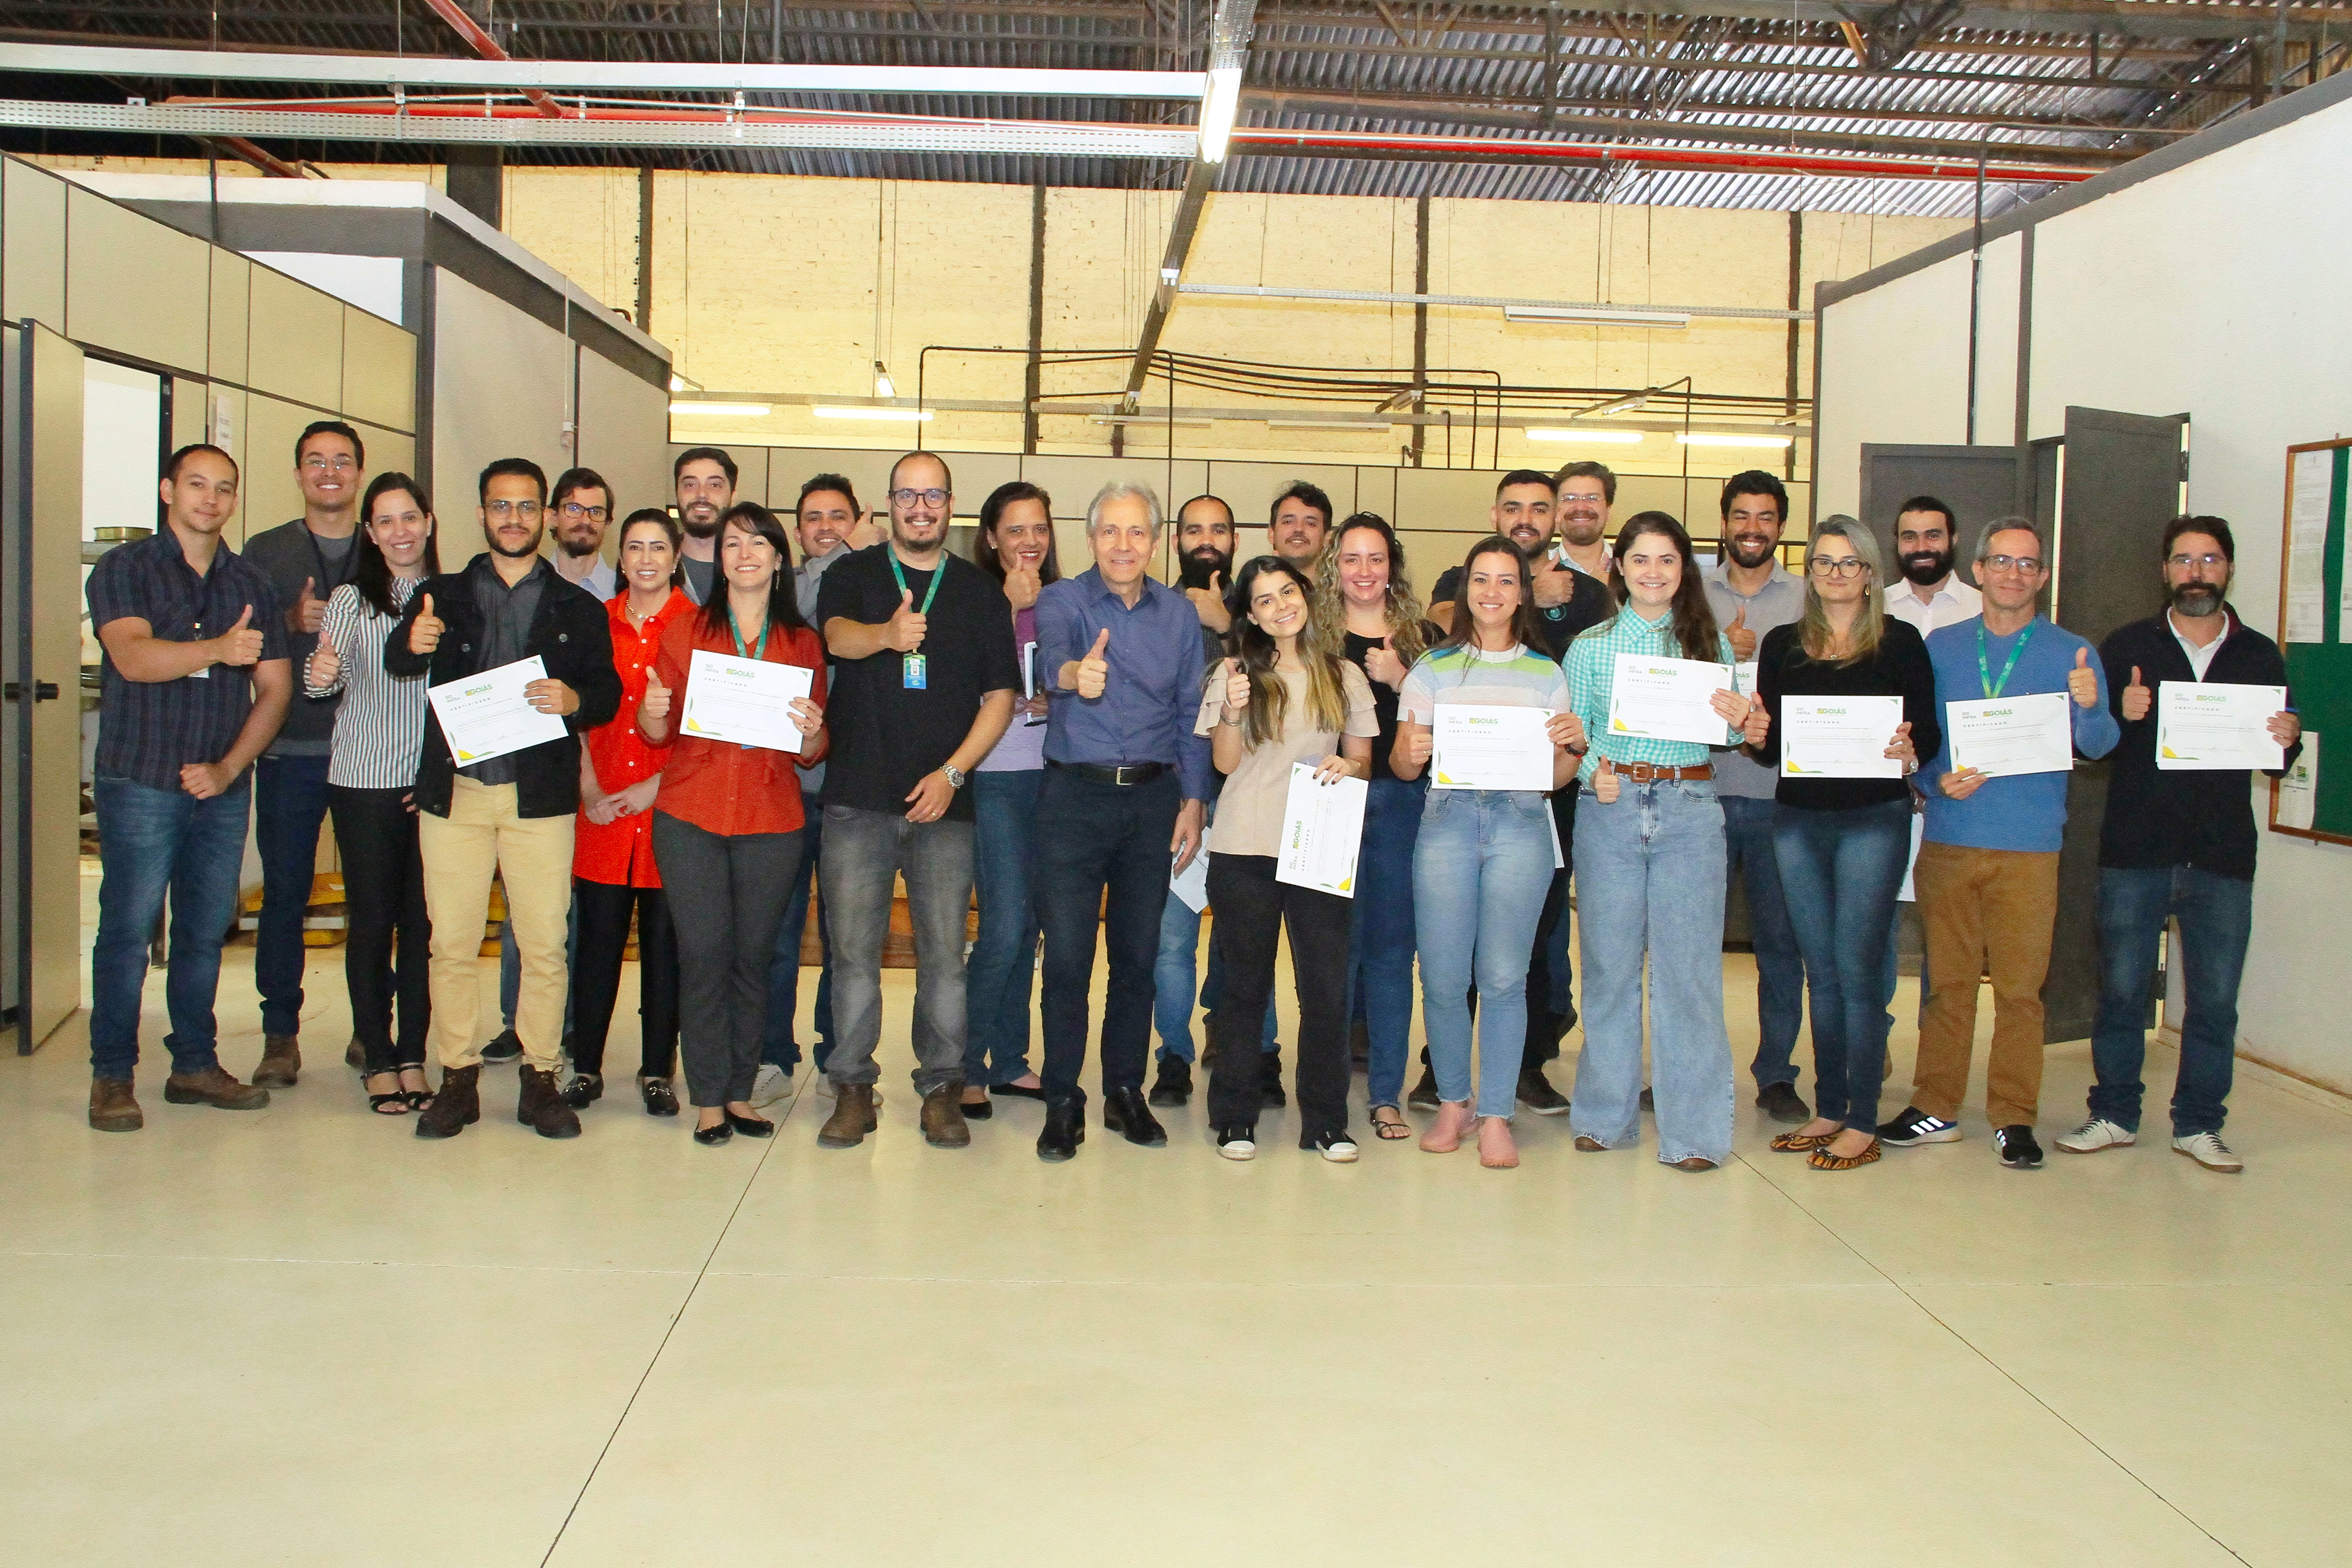 Servidores da Goinfra recebem certificados de conclusão do curso de análise de asfalto